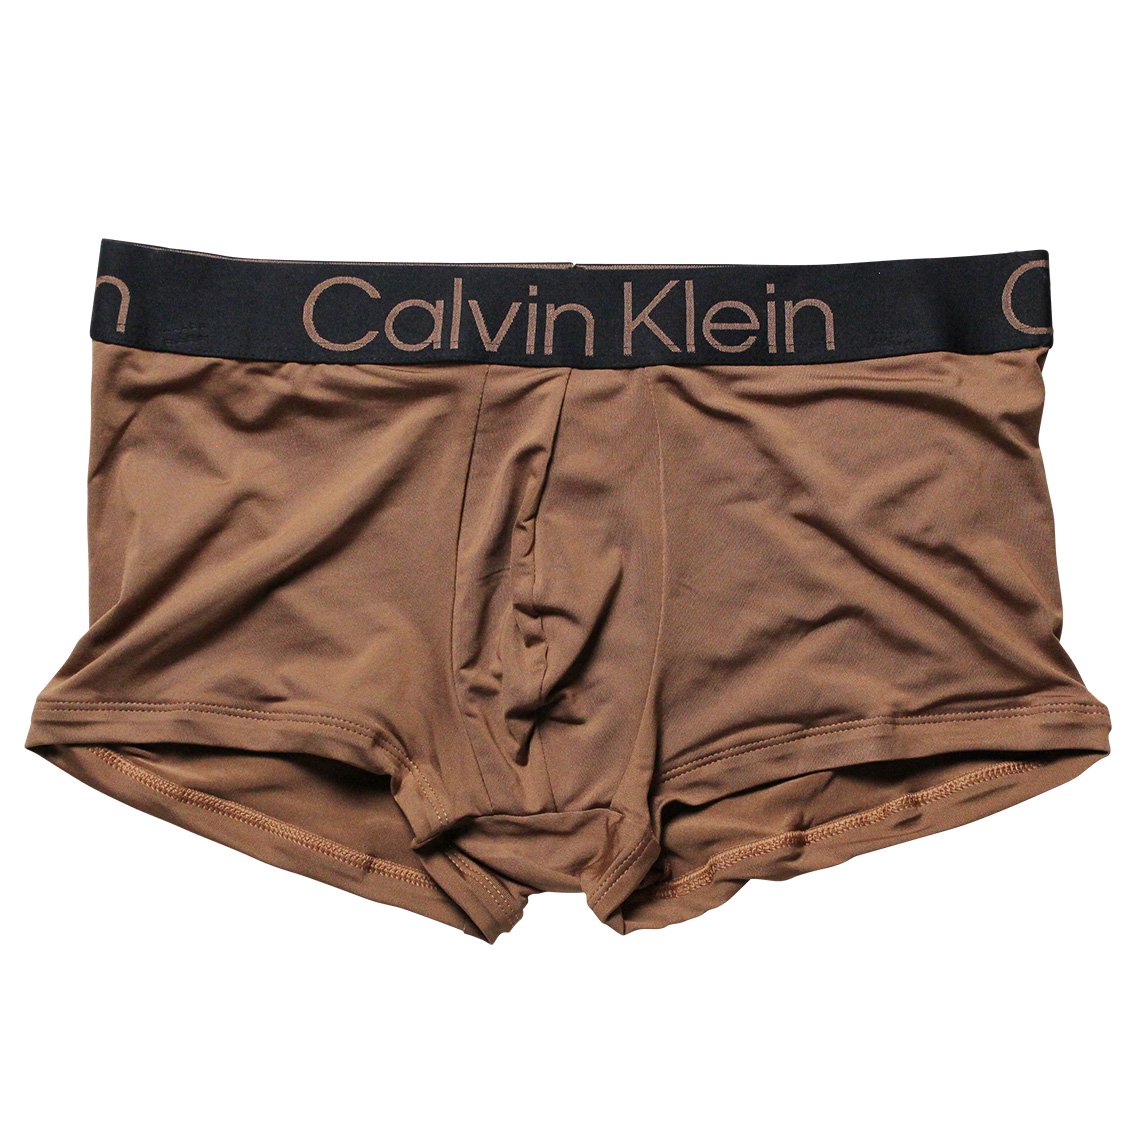 Calvin Klein(カルバンクライン)[NB3112-211]:ボクサーパンツ,男性下着 